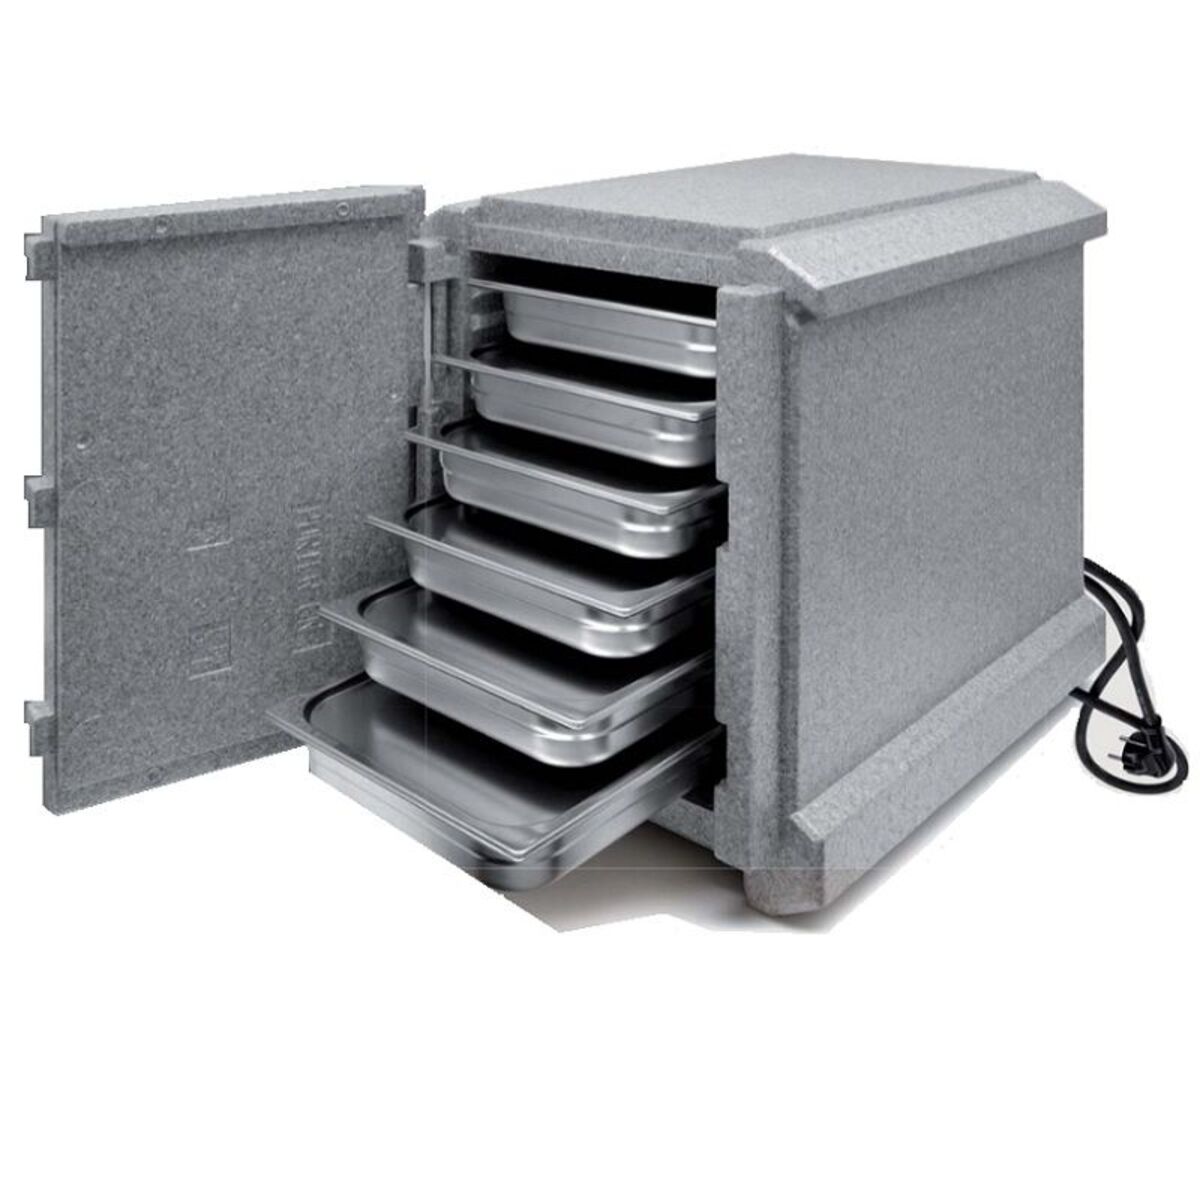 Conteneur isotherme 83 litres avec système de chauffage électrique intégré